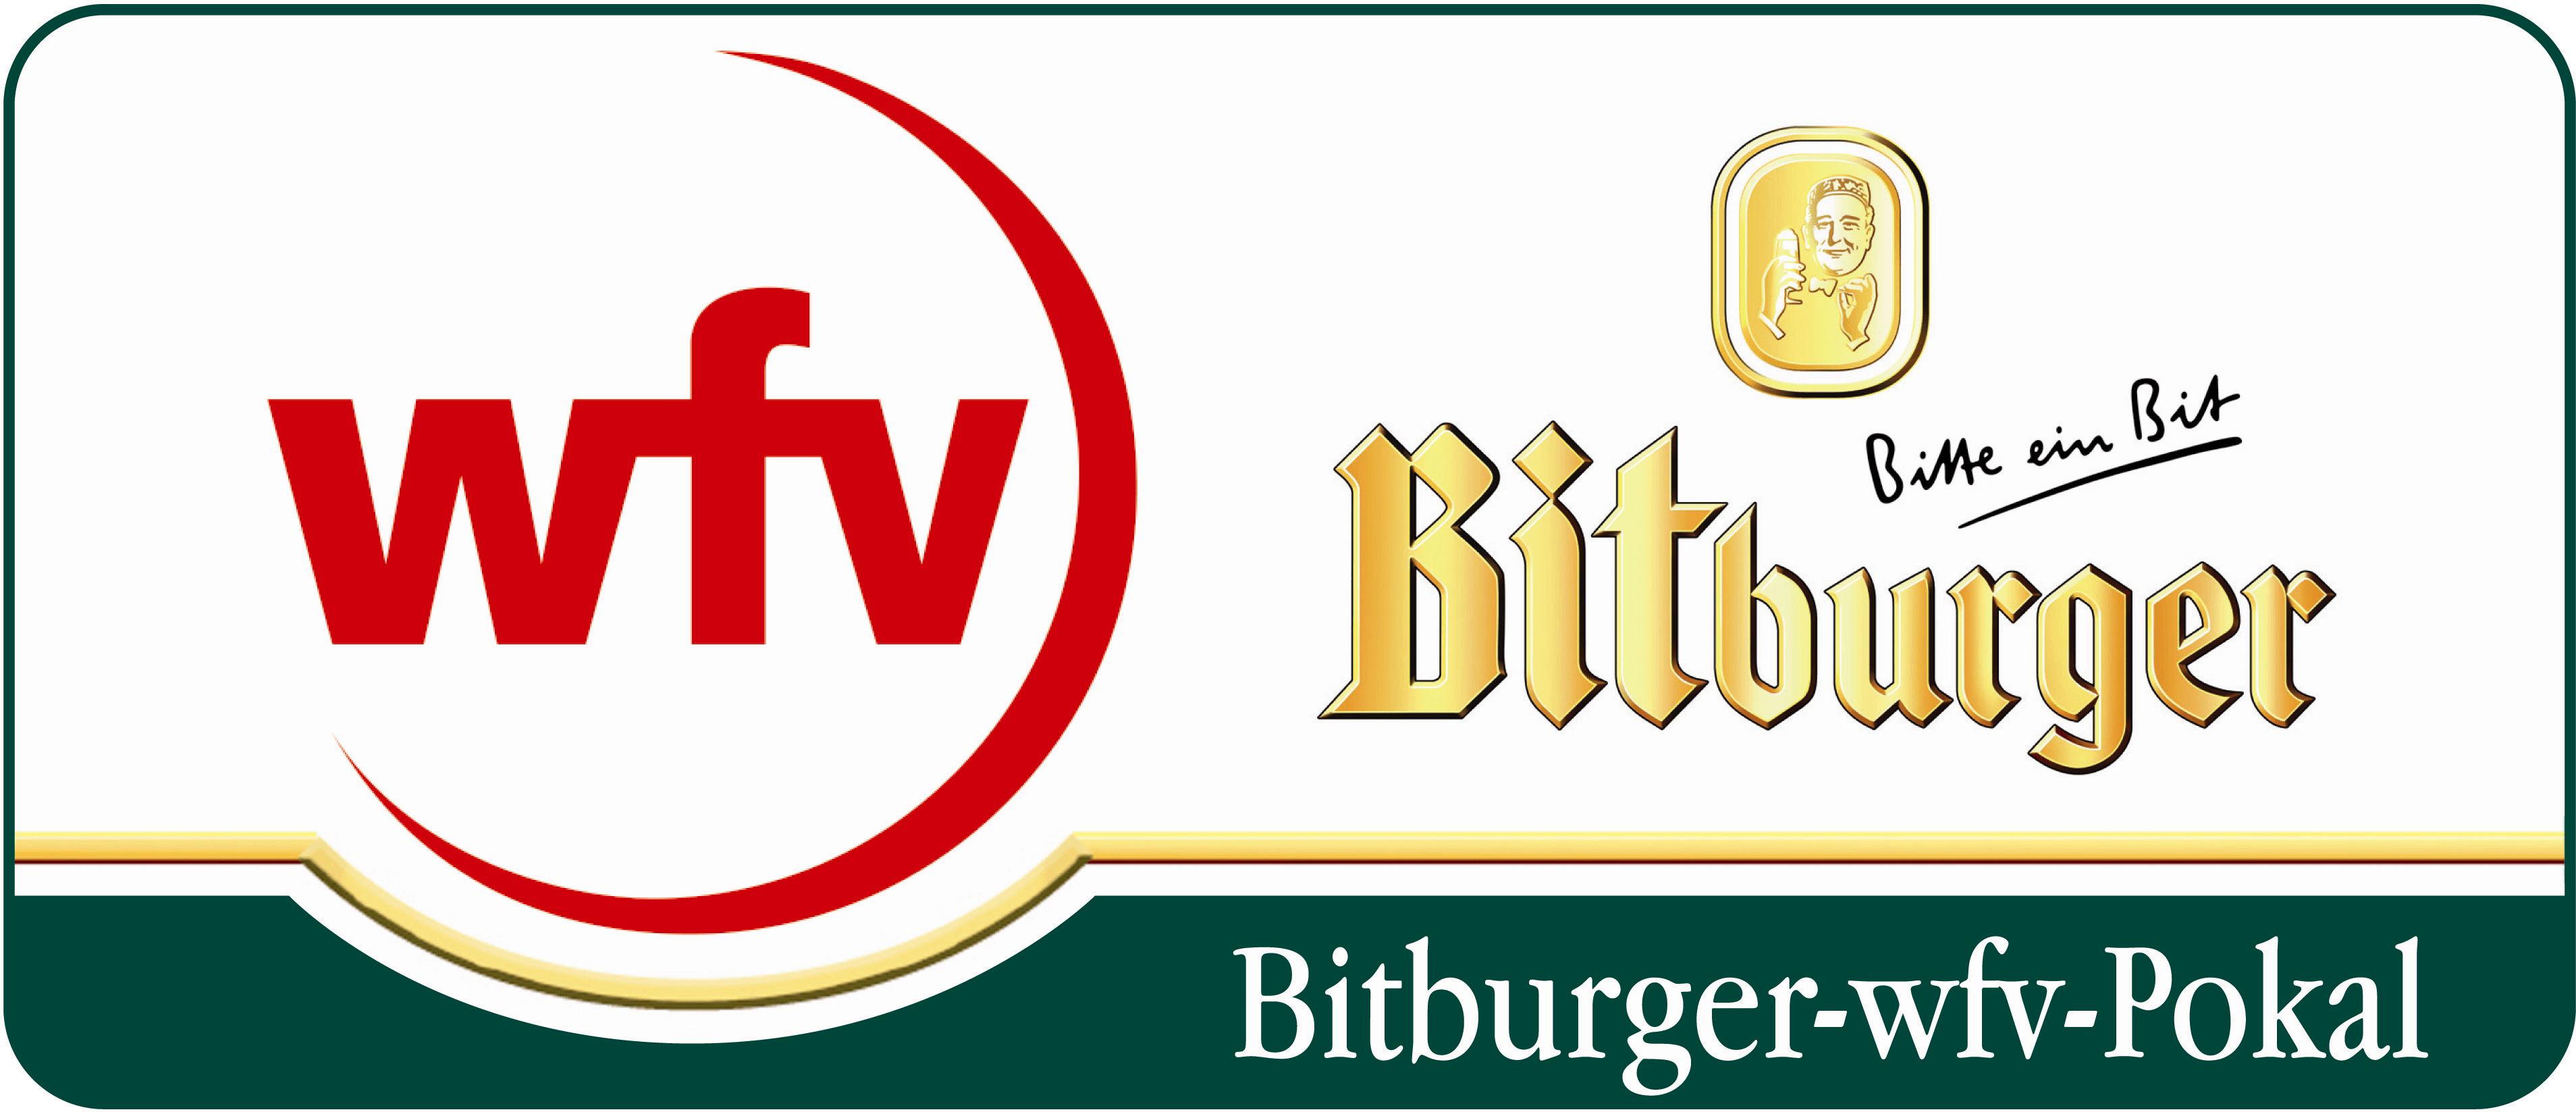 Bitburger Logo - File:Bitburger-wfv-pokal.png - Wikimedia Commons